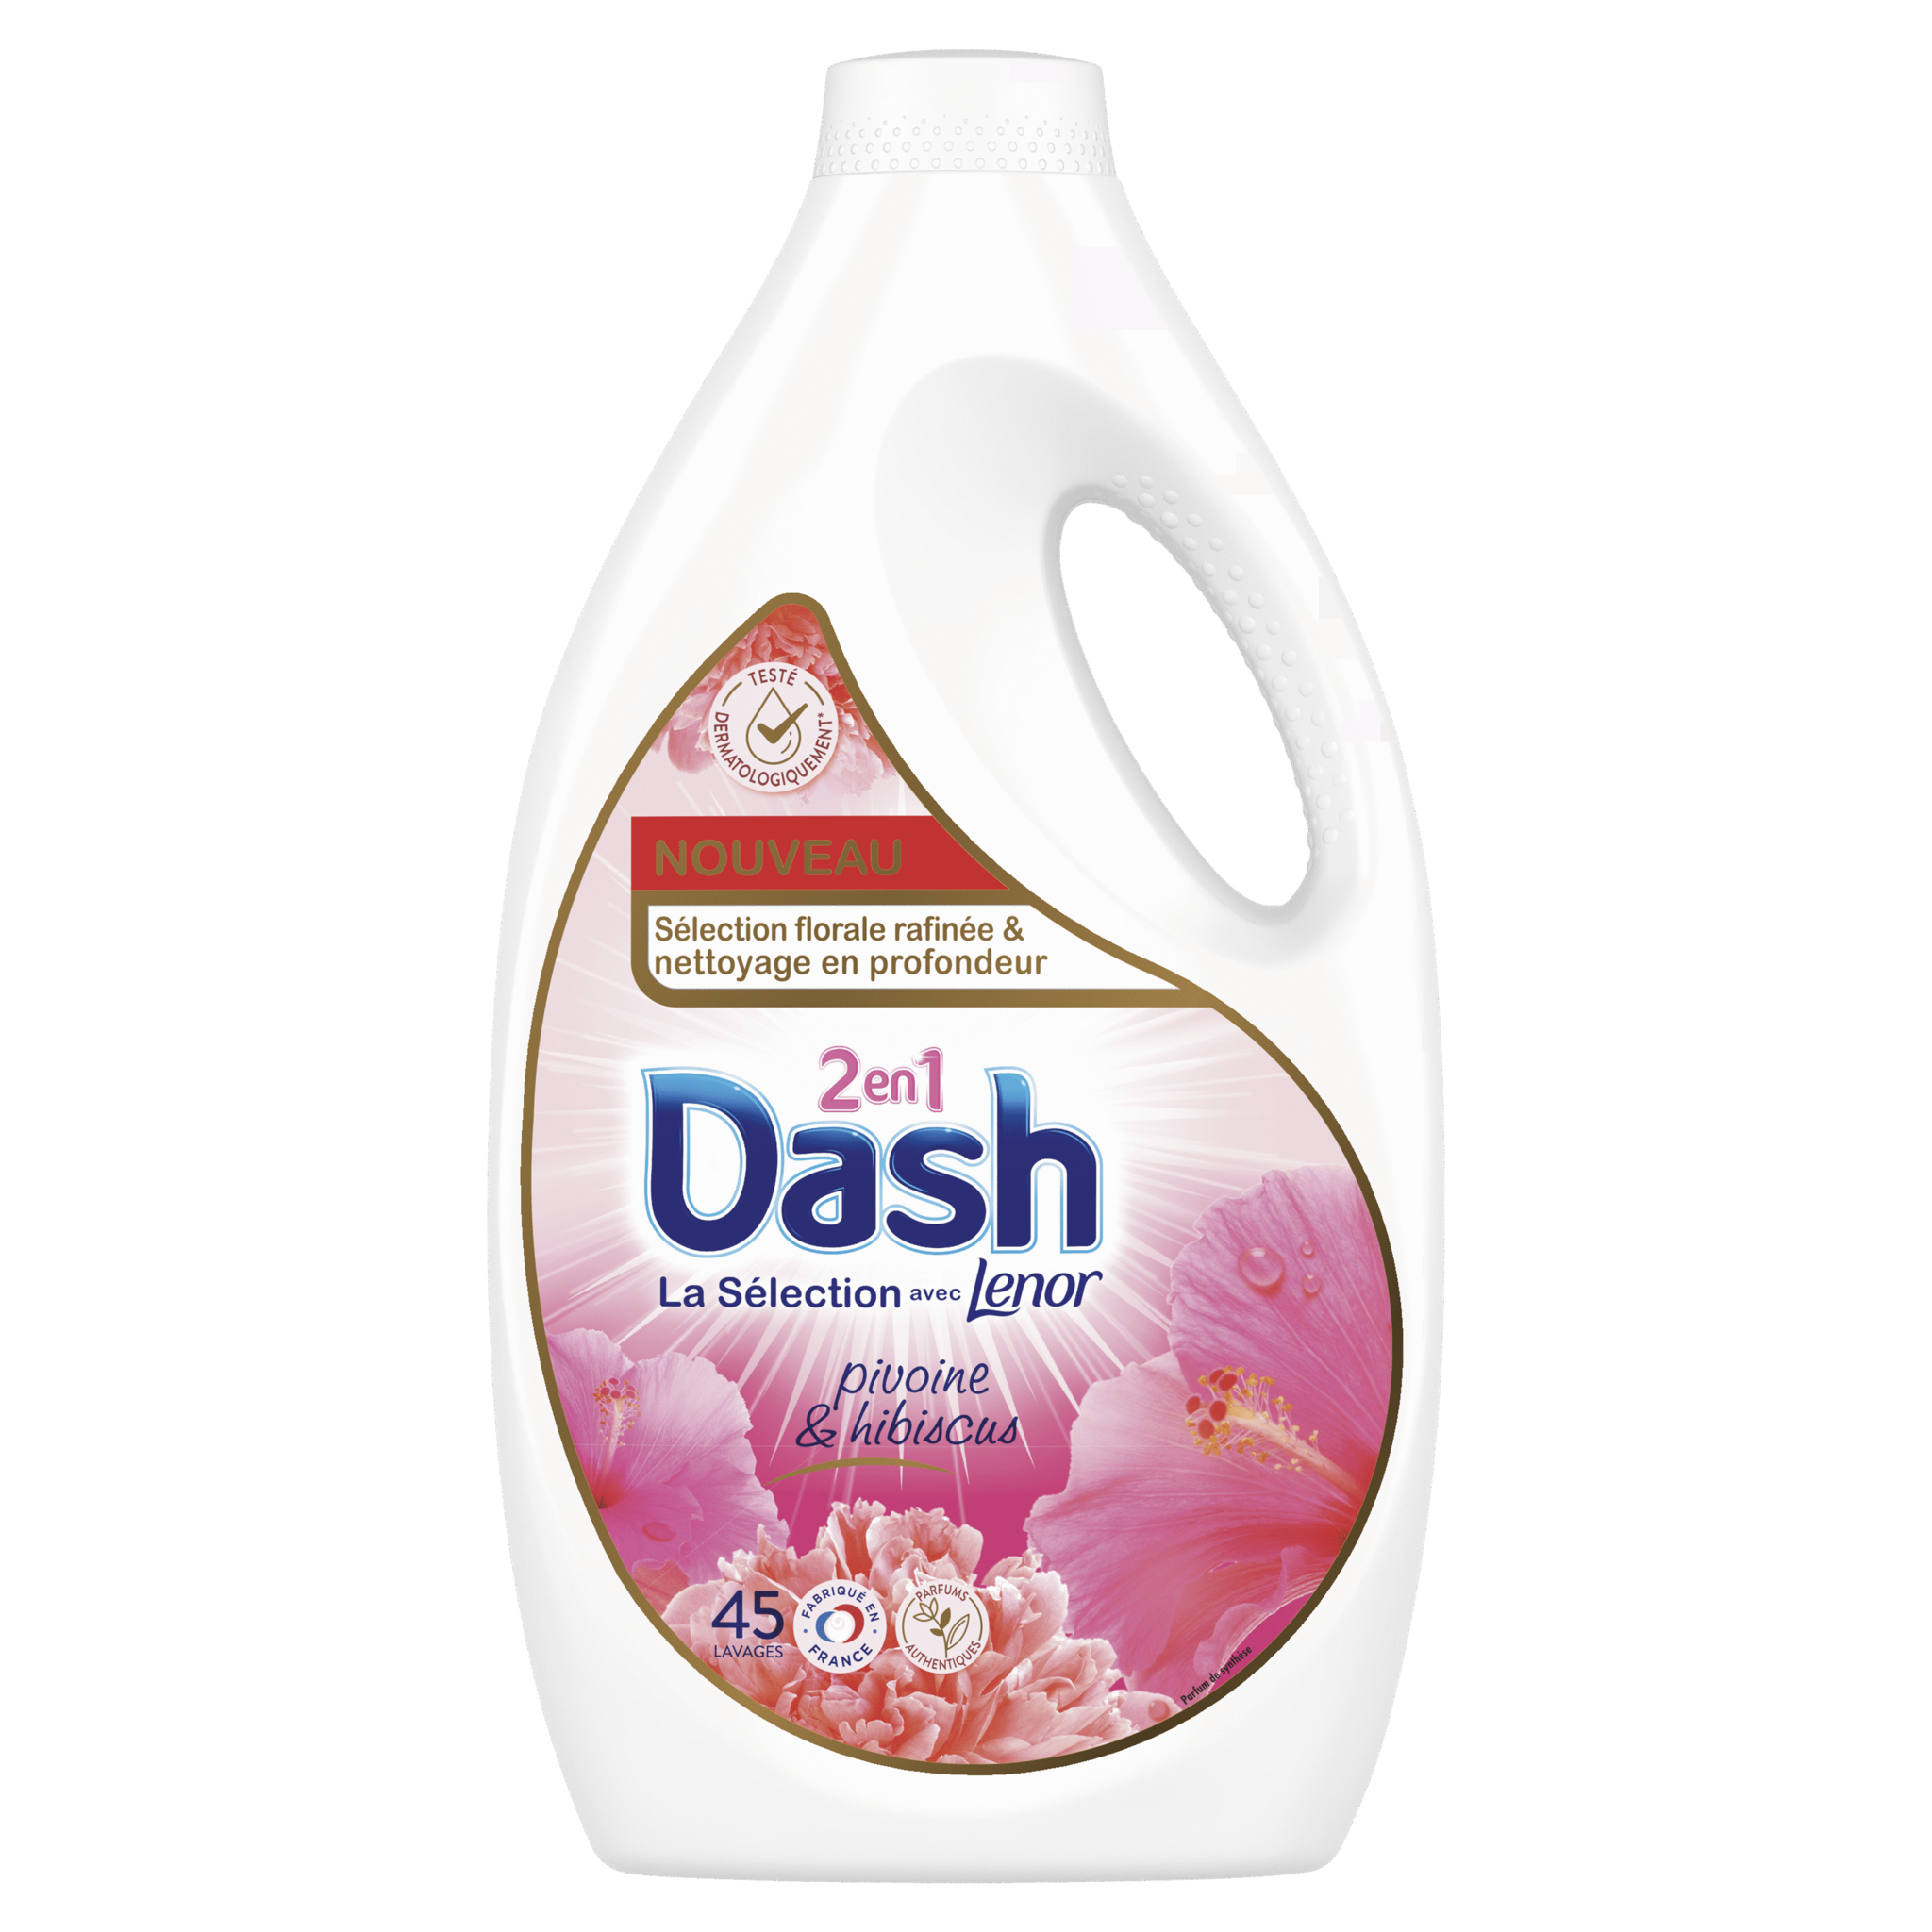 DASH 2en1 Lessive Liquide pivoine et hibiscus 45 lavages 2.25l pas